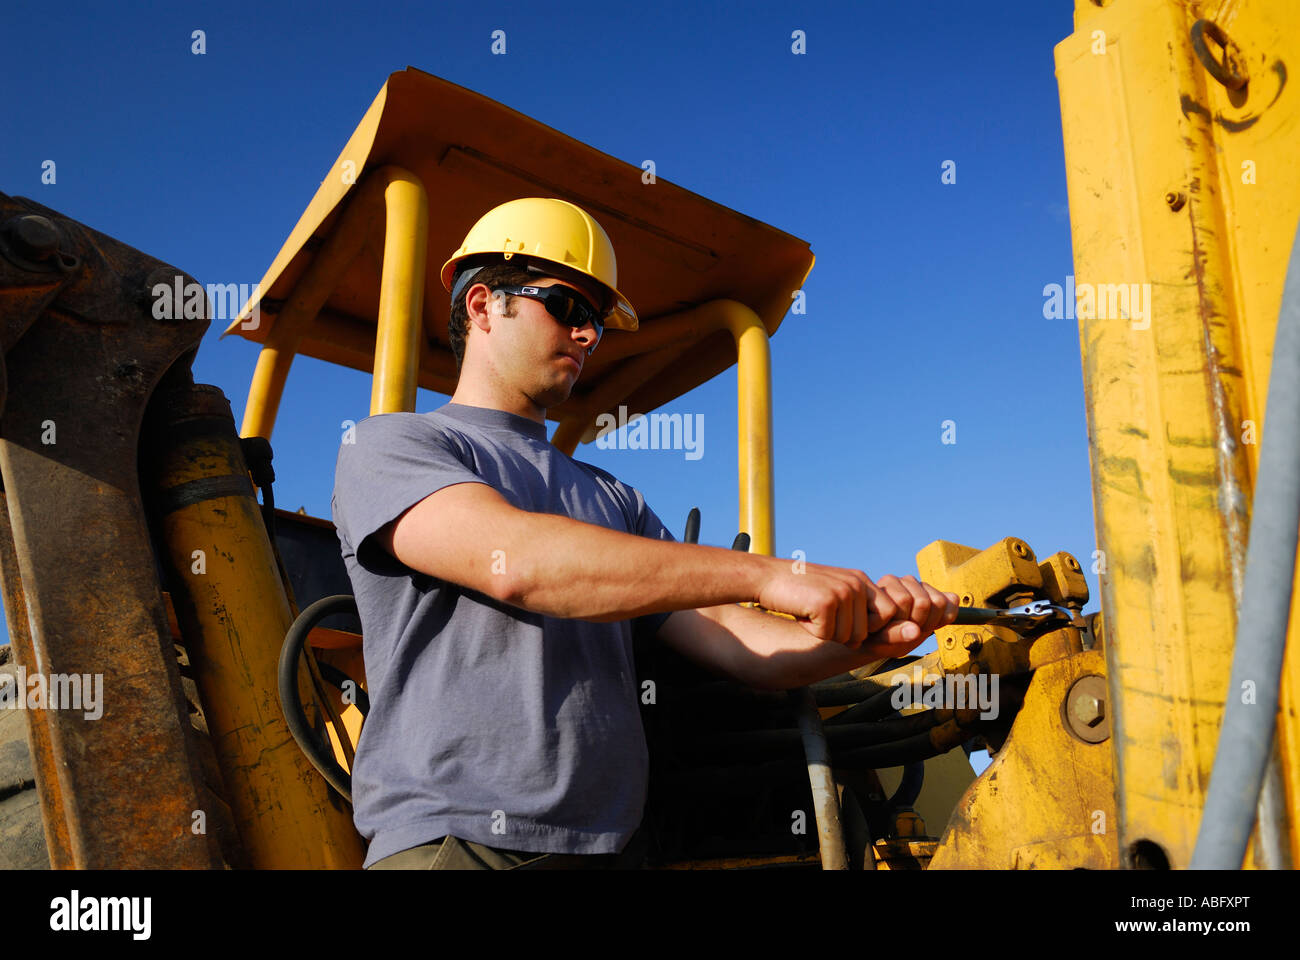 Bauarbeiter in gelben Bauhelm anziehen eine Verbindung auf einem Baggerlader Ausrüstung Stockfoto